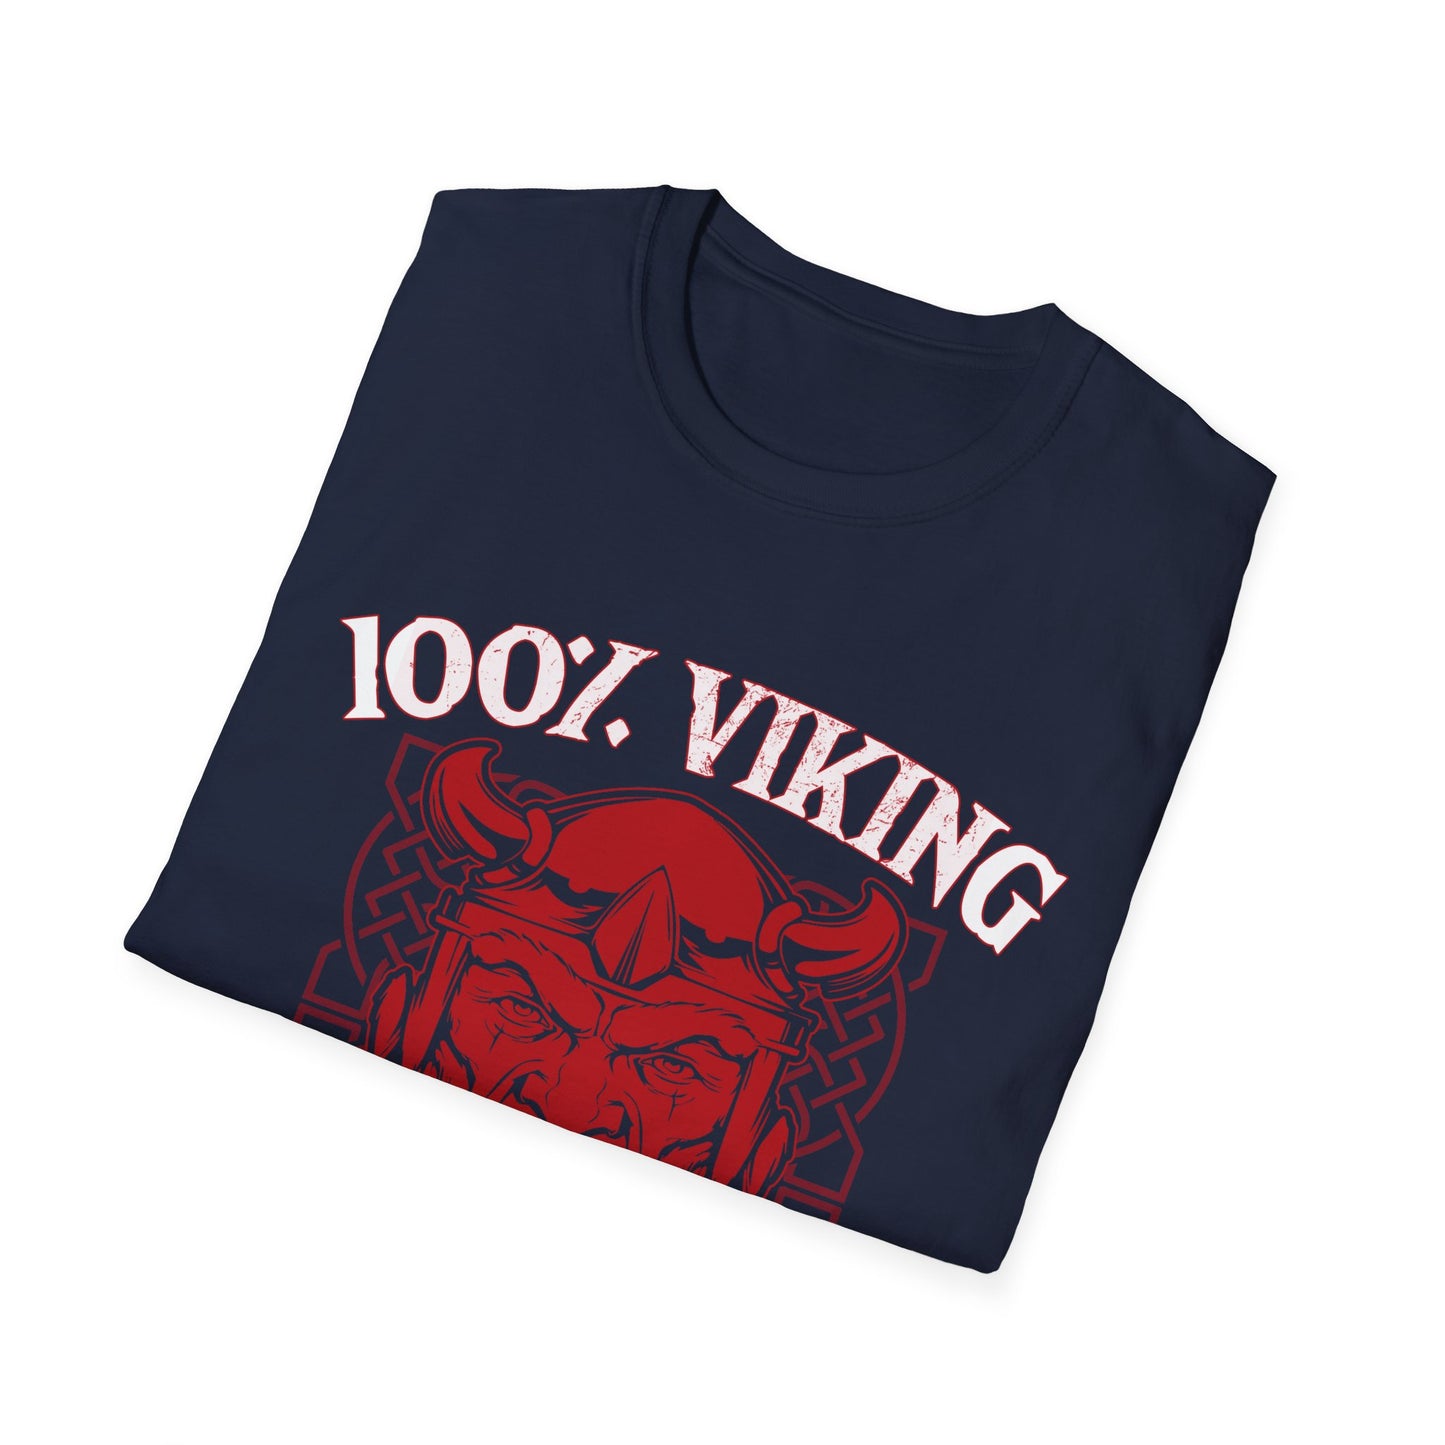 100% Viking Blood T-Shirt